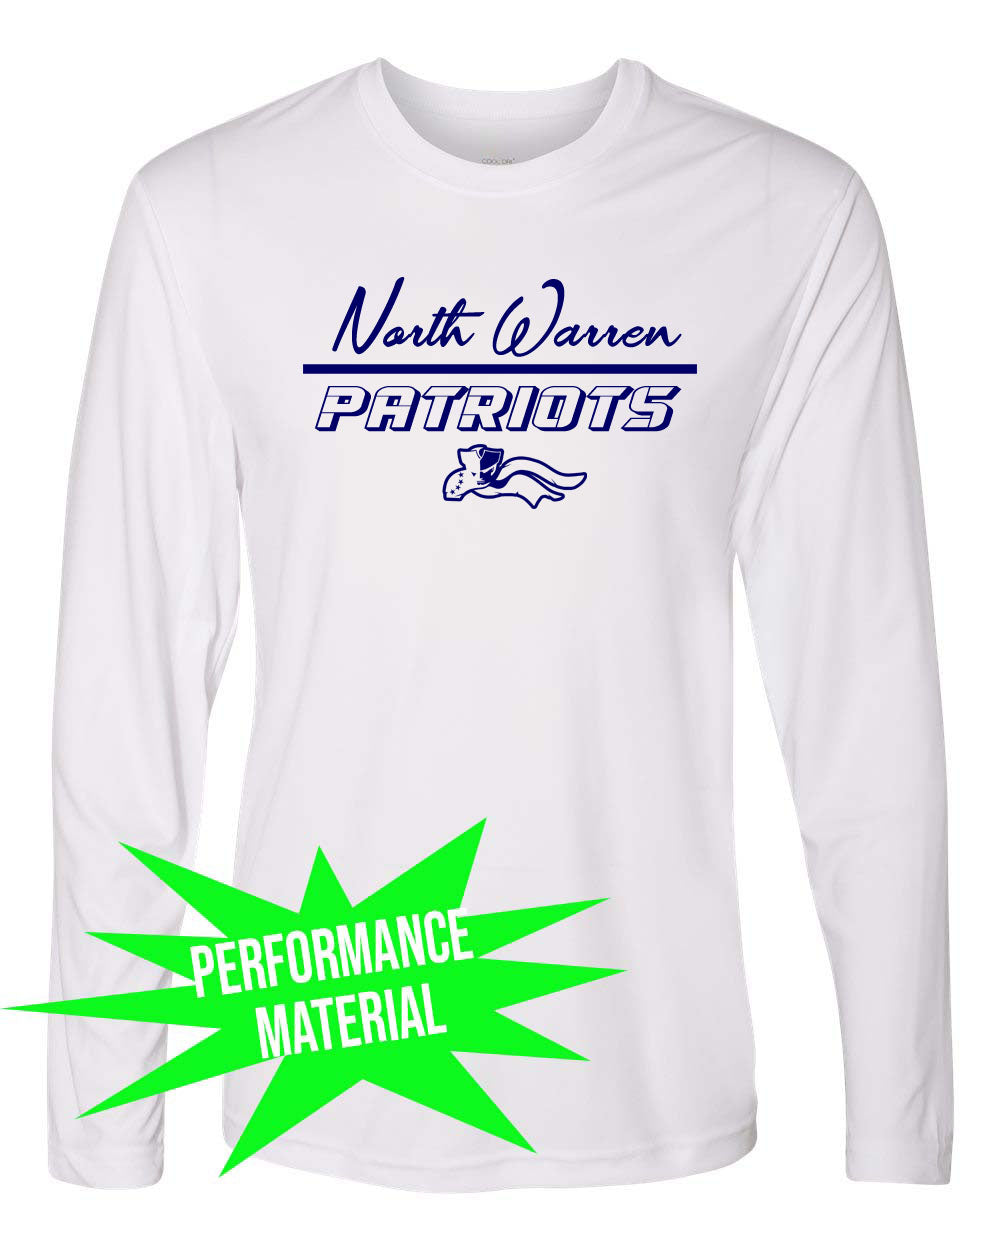 North Warren Performance Material Design 10 Long Sleeve Shirt